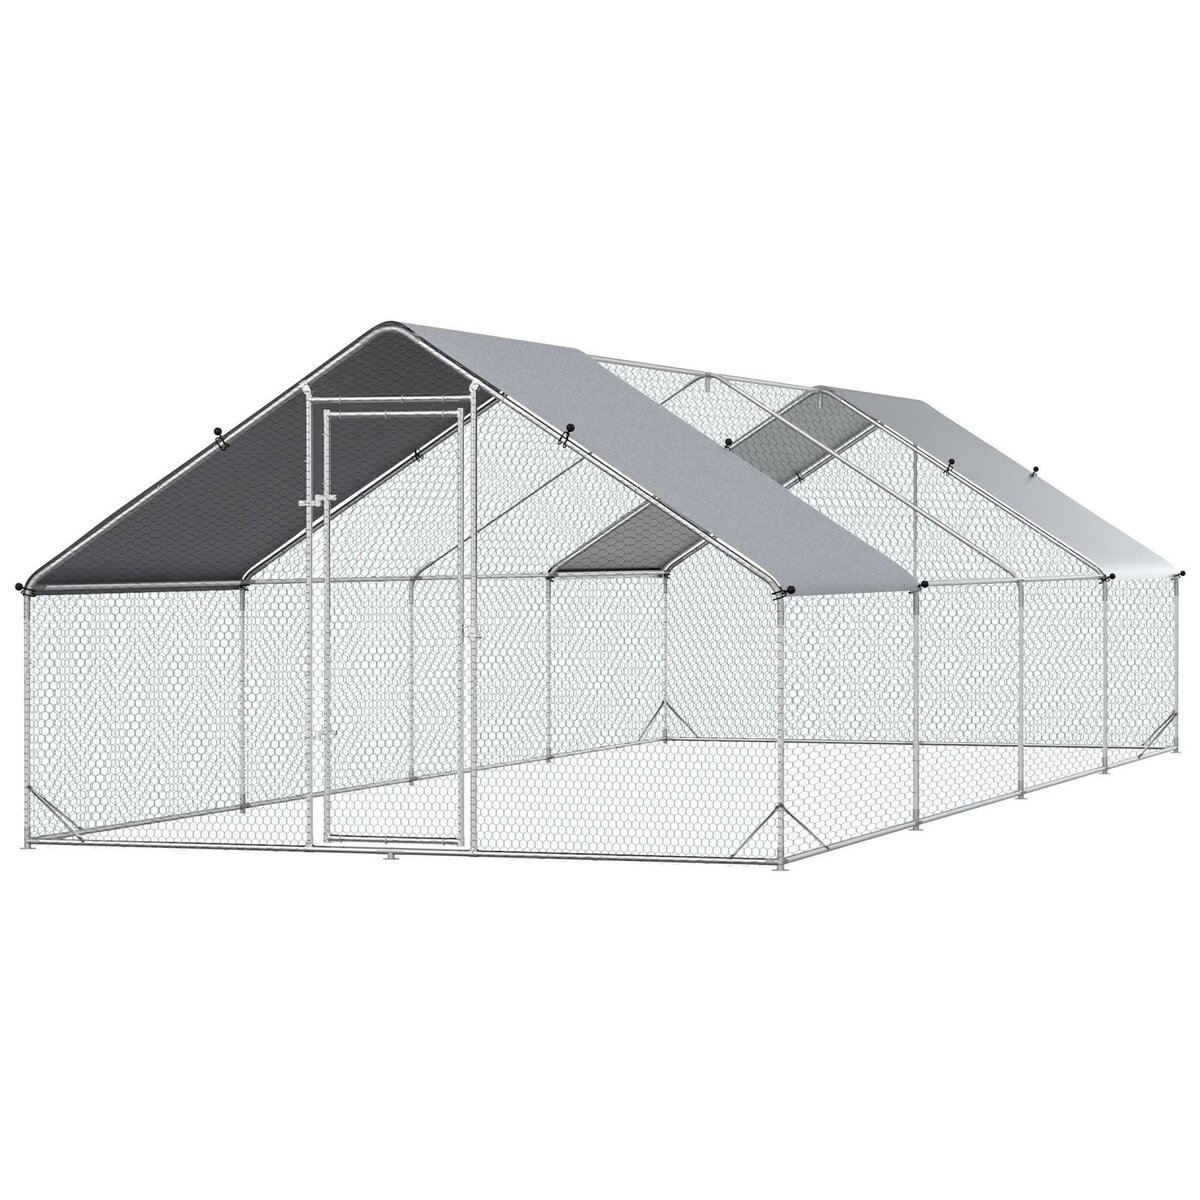 PAWHUT Enclos poulailler chenil 24 m² - parc grillagé dim. 8L x 3l x 2H m - double espace couvert - acier galvanisé